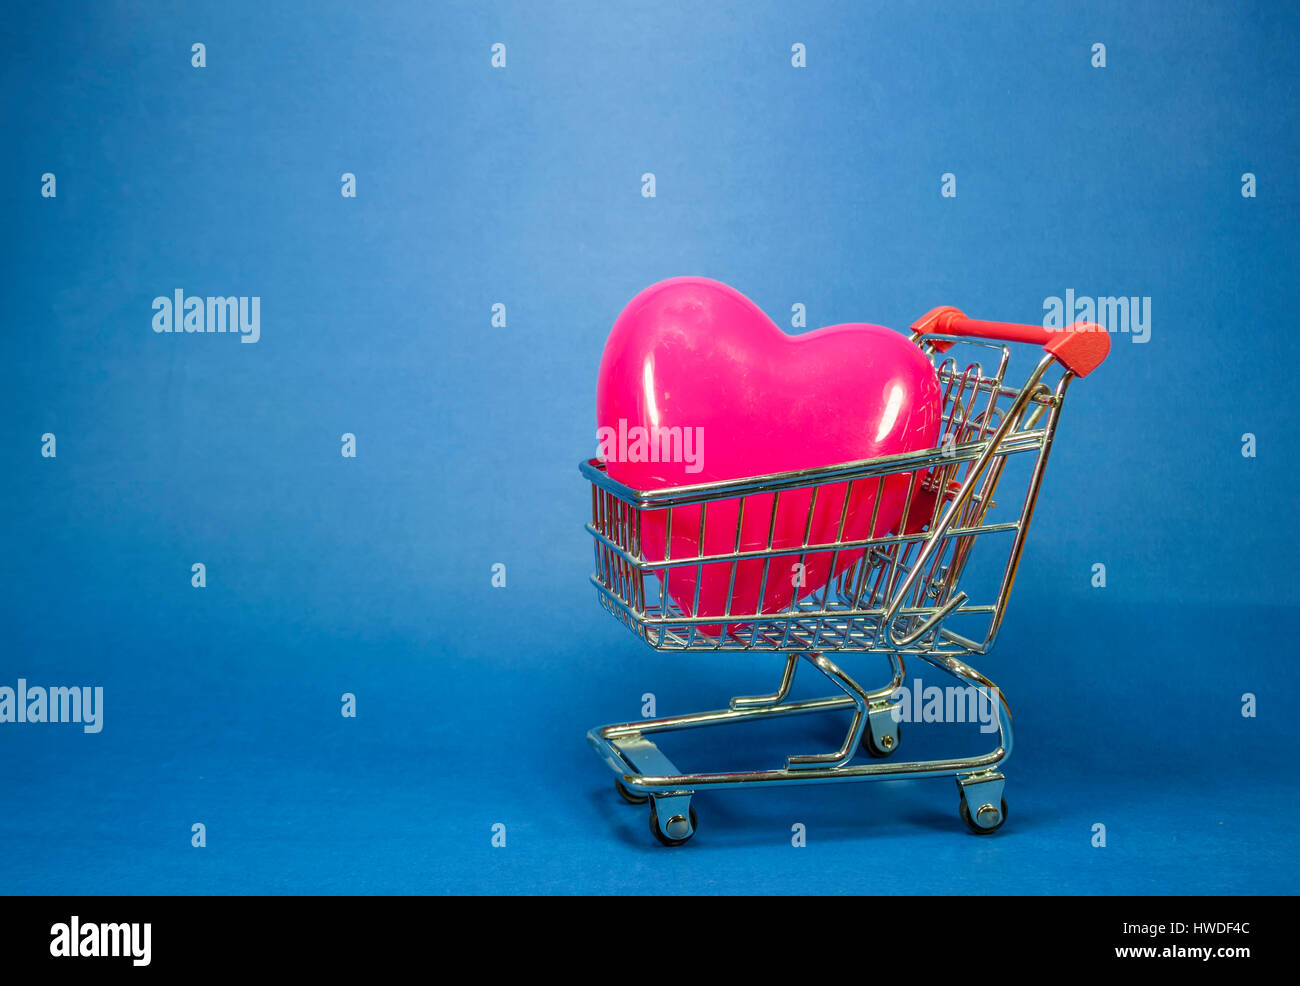 Cuore in plastica rosso di forma all'interno di una miniatura del carrello su sfondo blu, immagine concettuale circa l'amore come una merce nella società consumistica Foto Stock